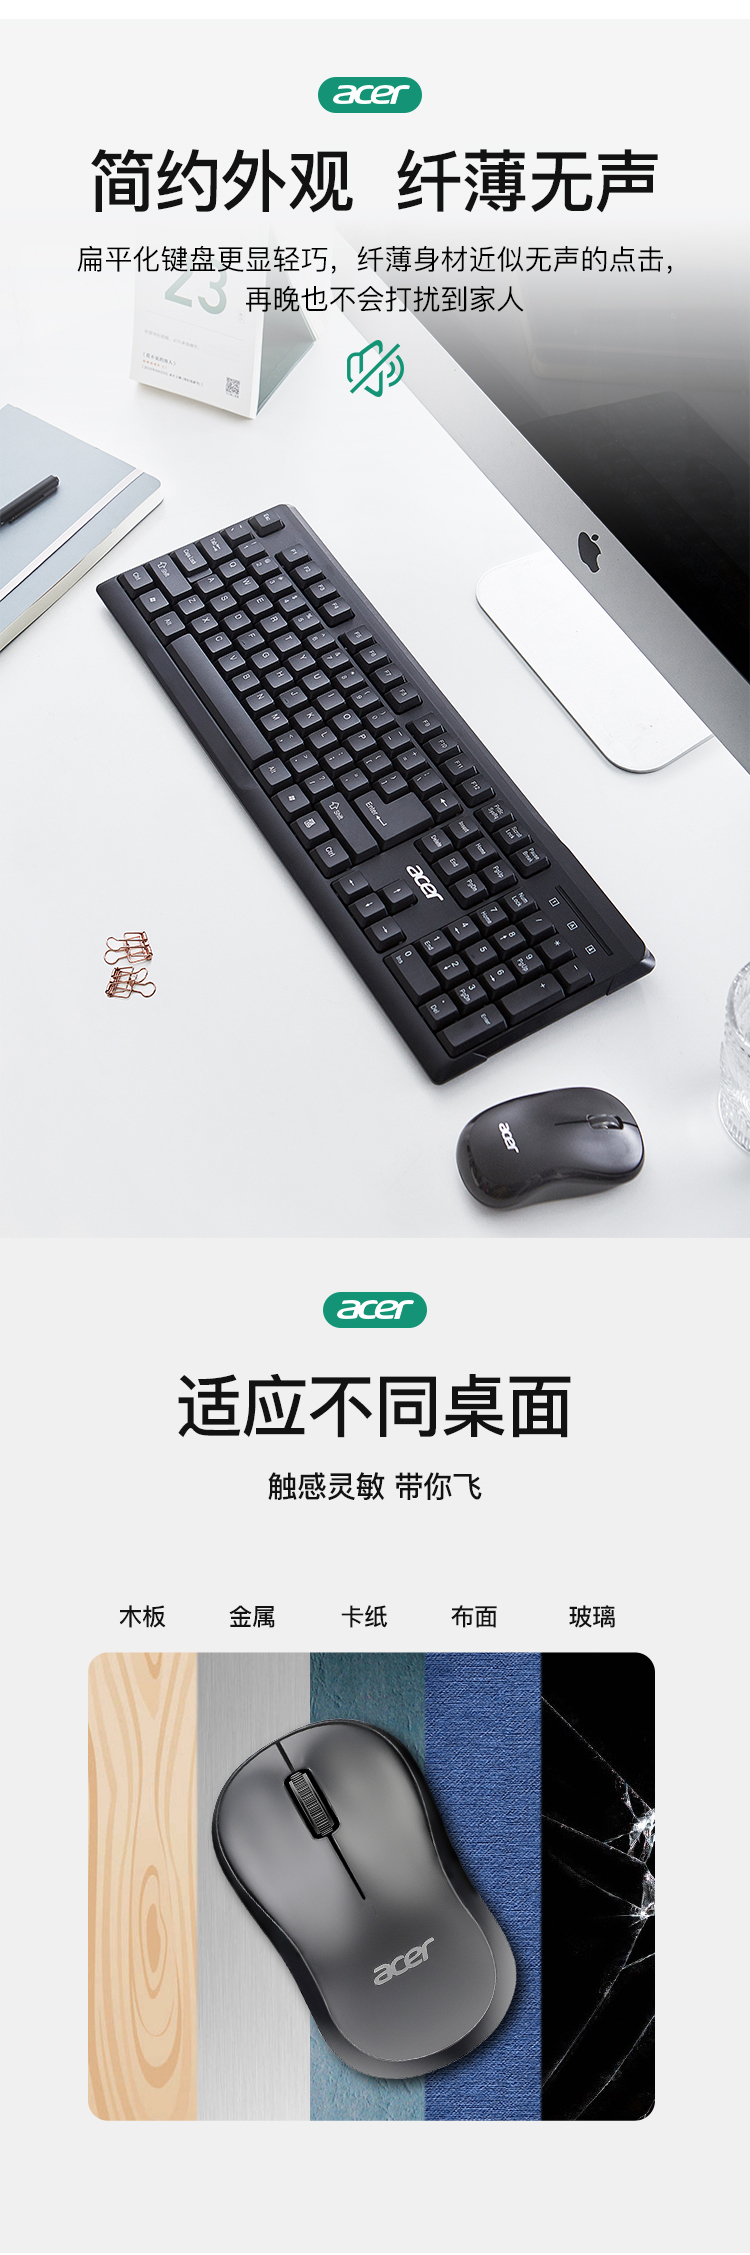 宏碁(Acer) 键鼠套装 无线键鼠套装 办公键盘鼠标套装 防泼溅 电脑键盘 鼠标键盘 黑